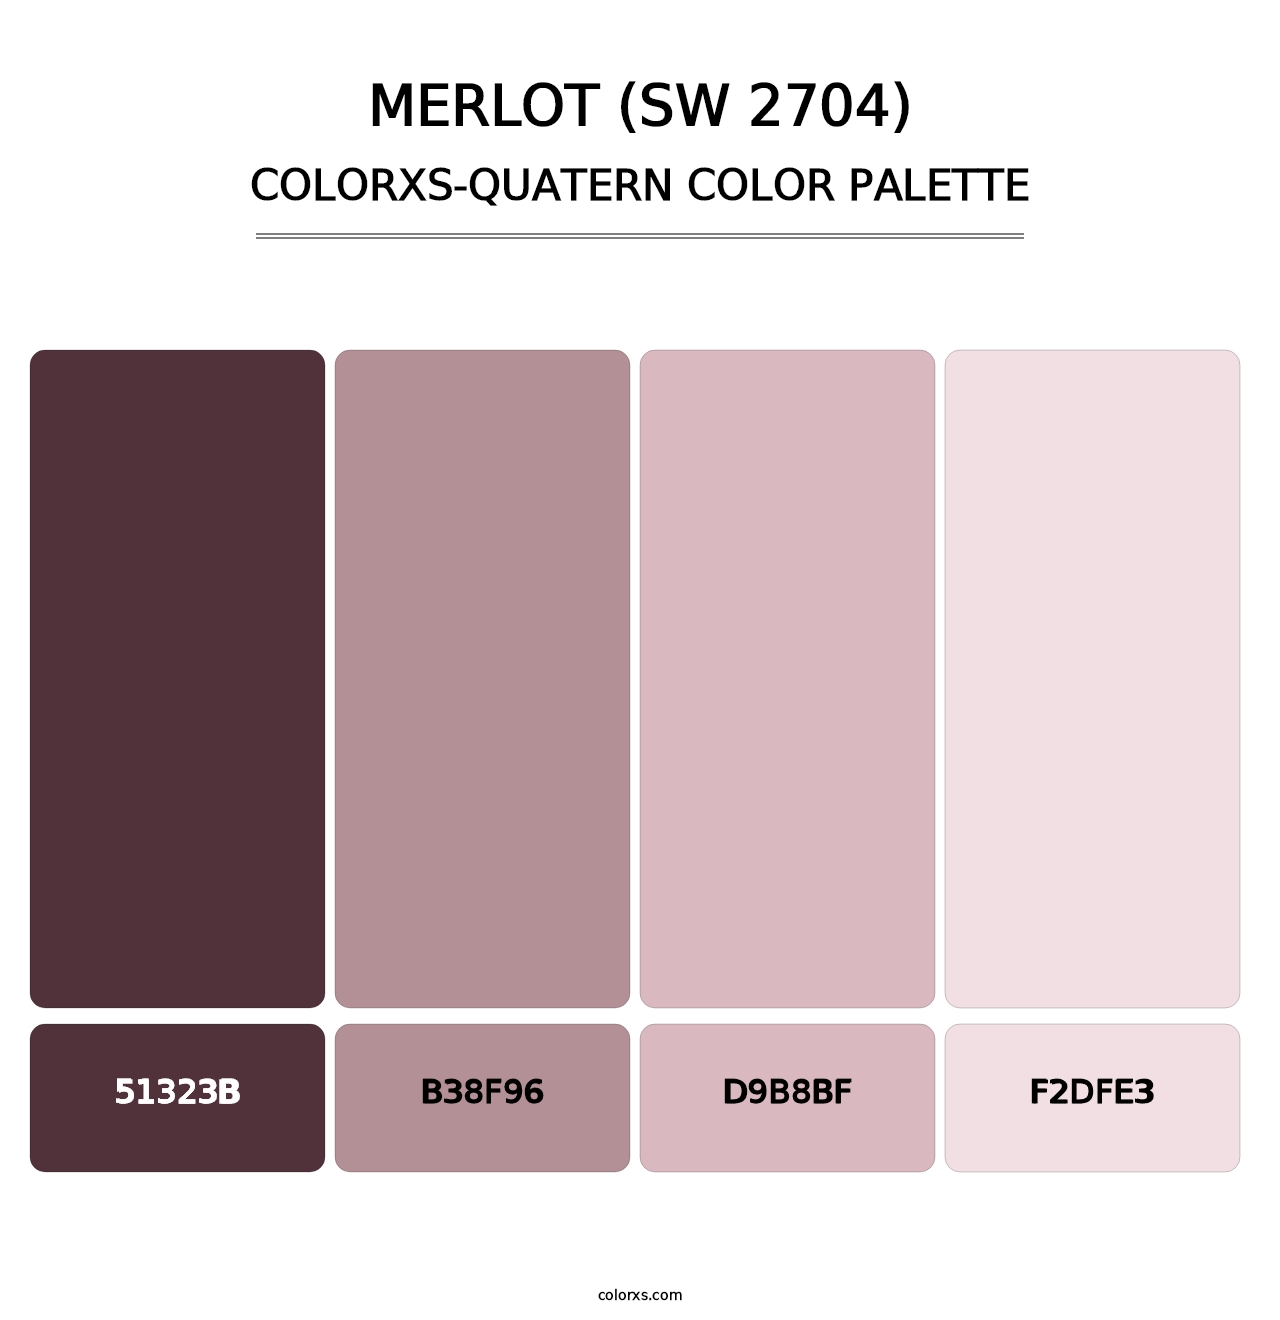 Merlot (SW 2704) - Colorxs Quatern Palette